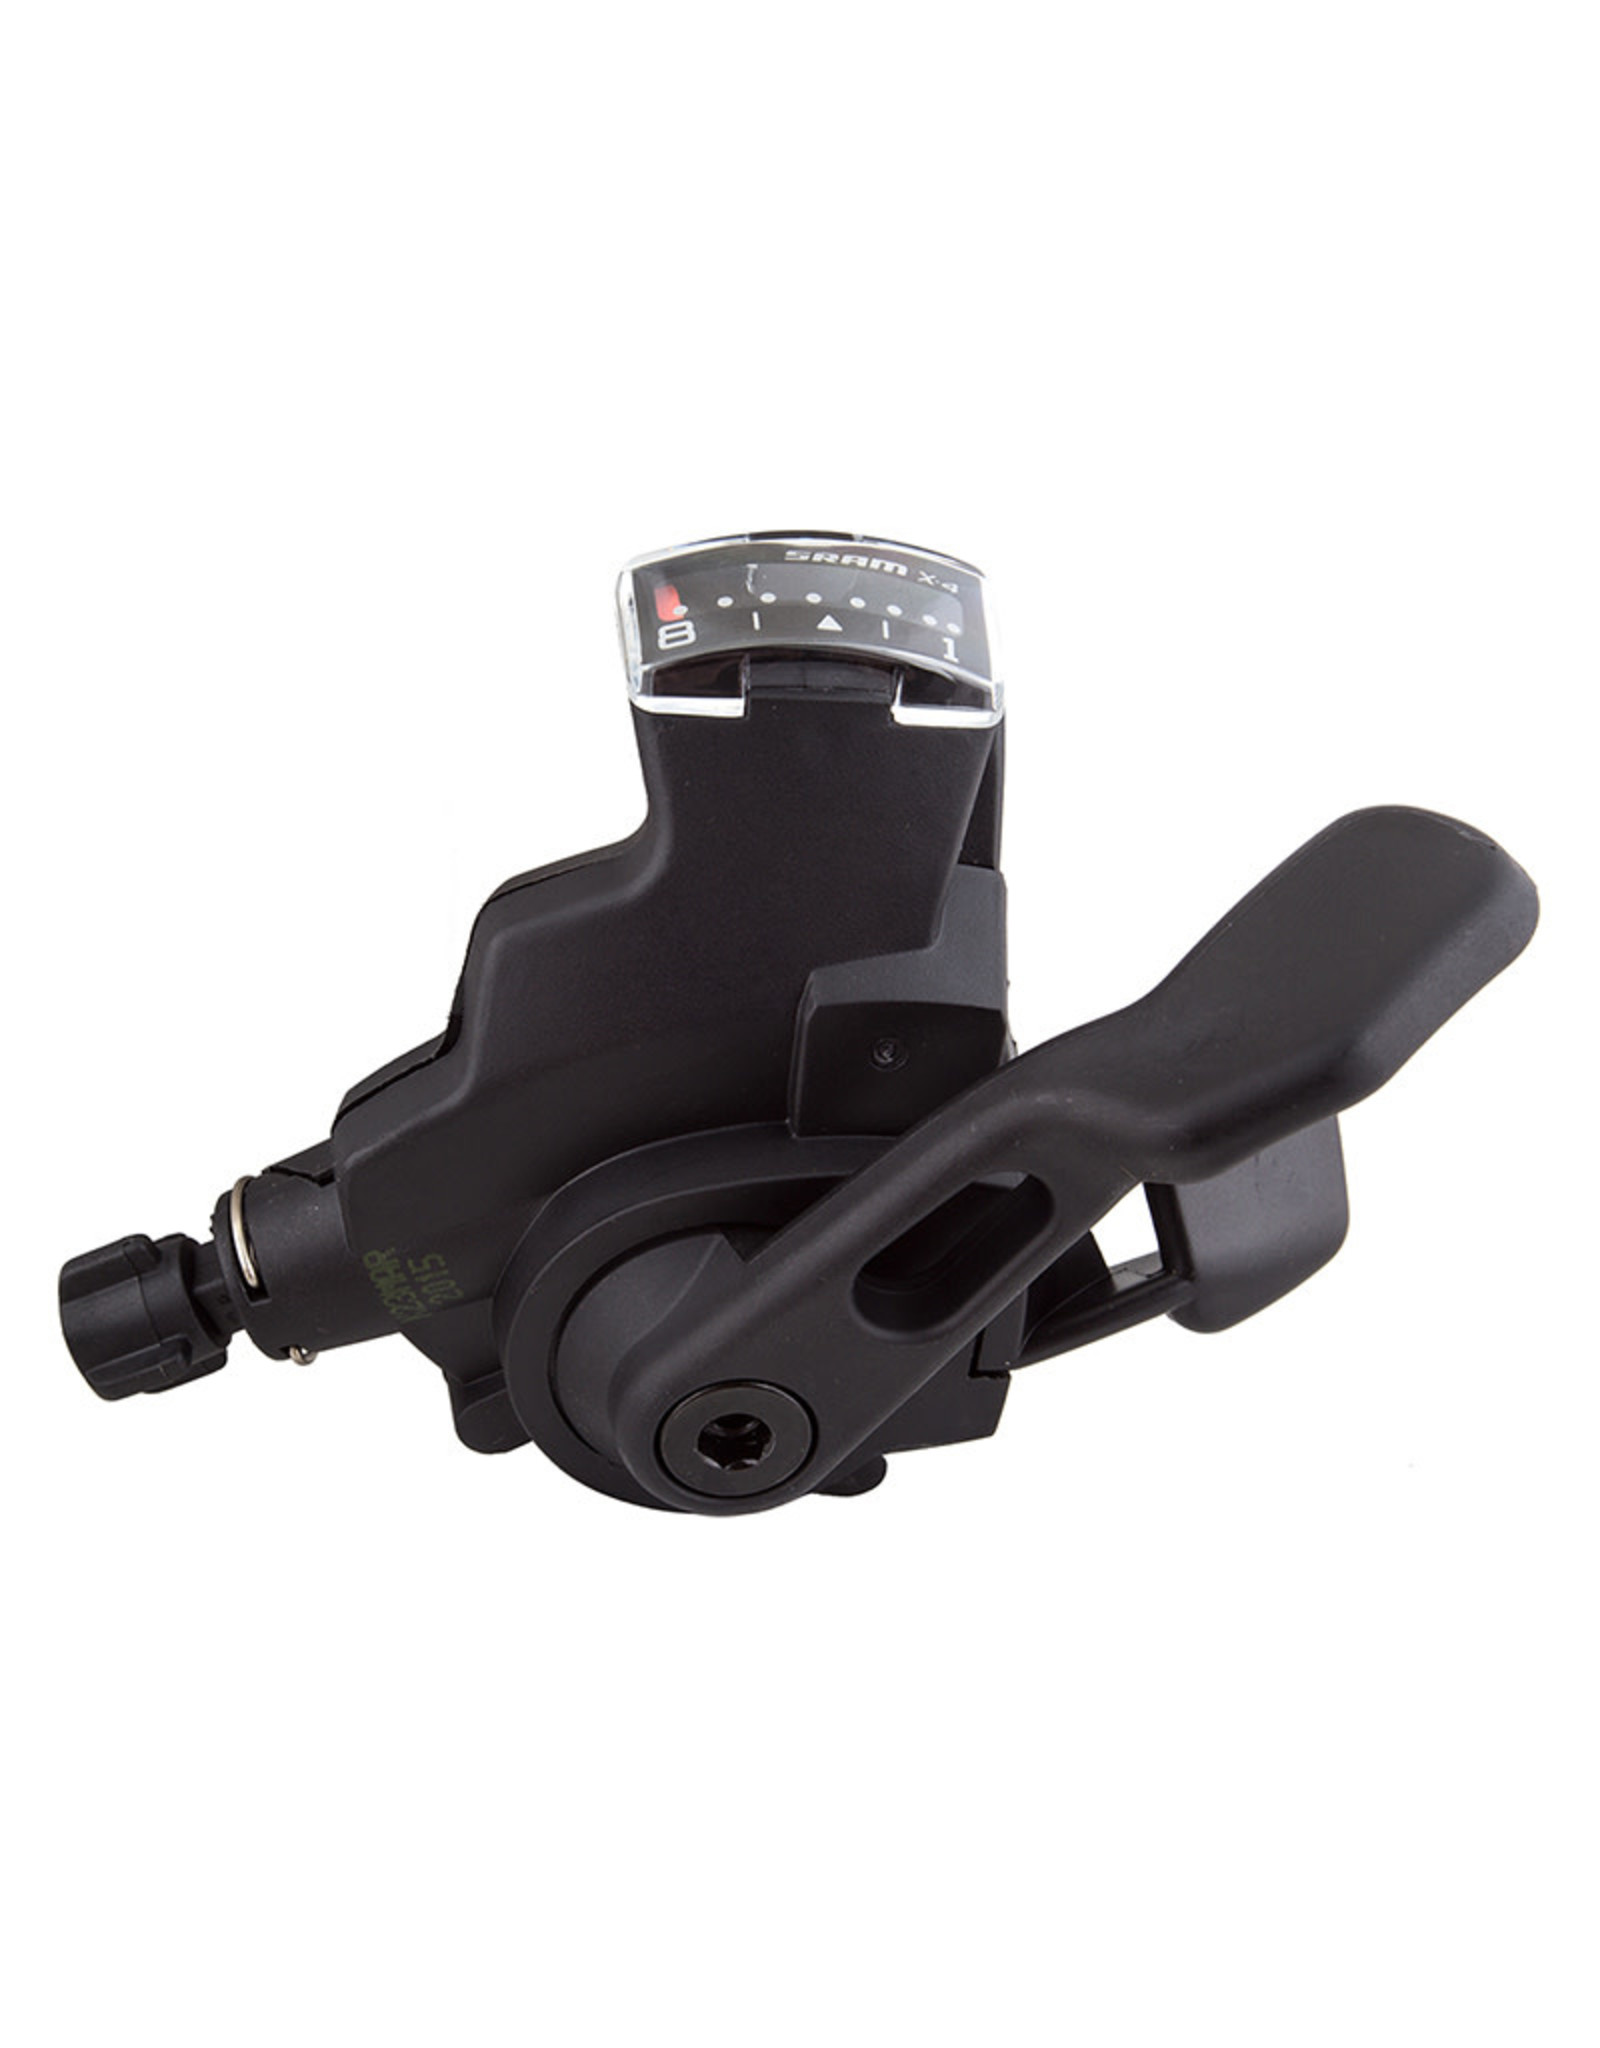 SRAM SRAM X4 Trigger Shifter Rear 8-Speed Black